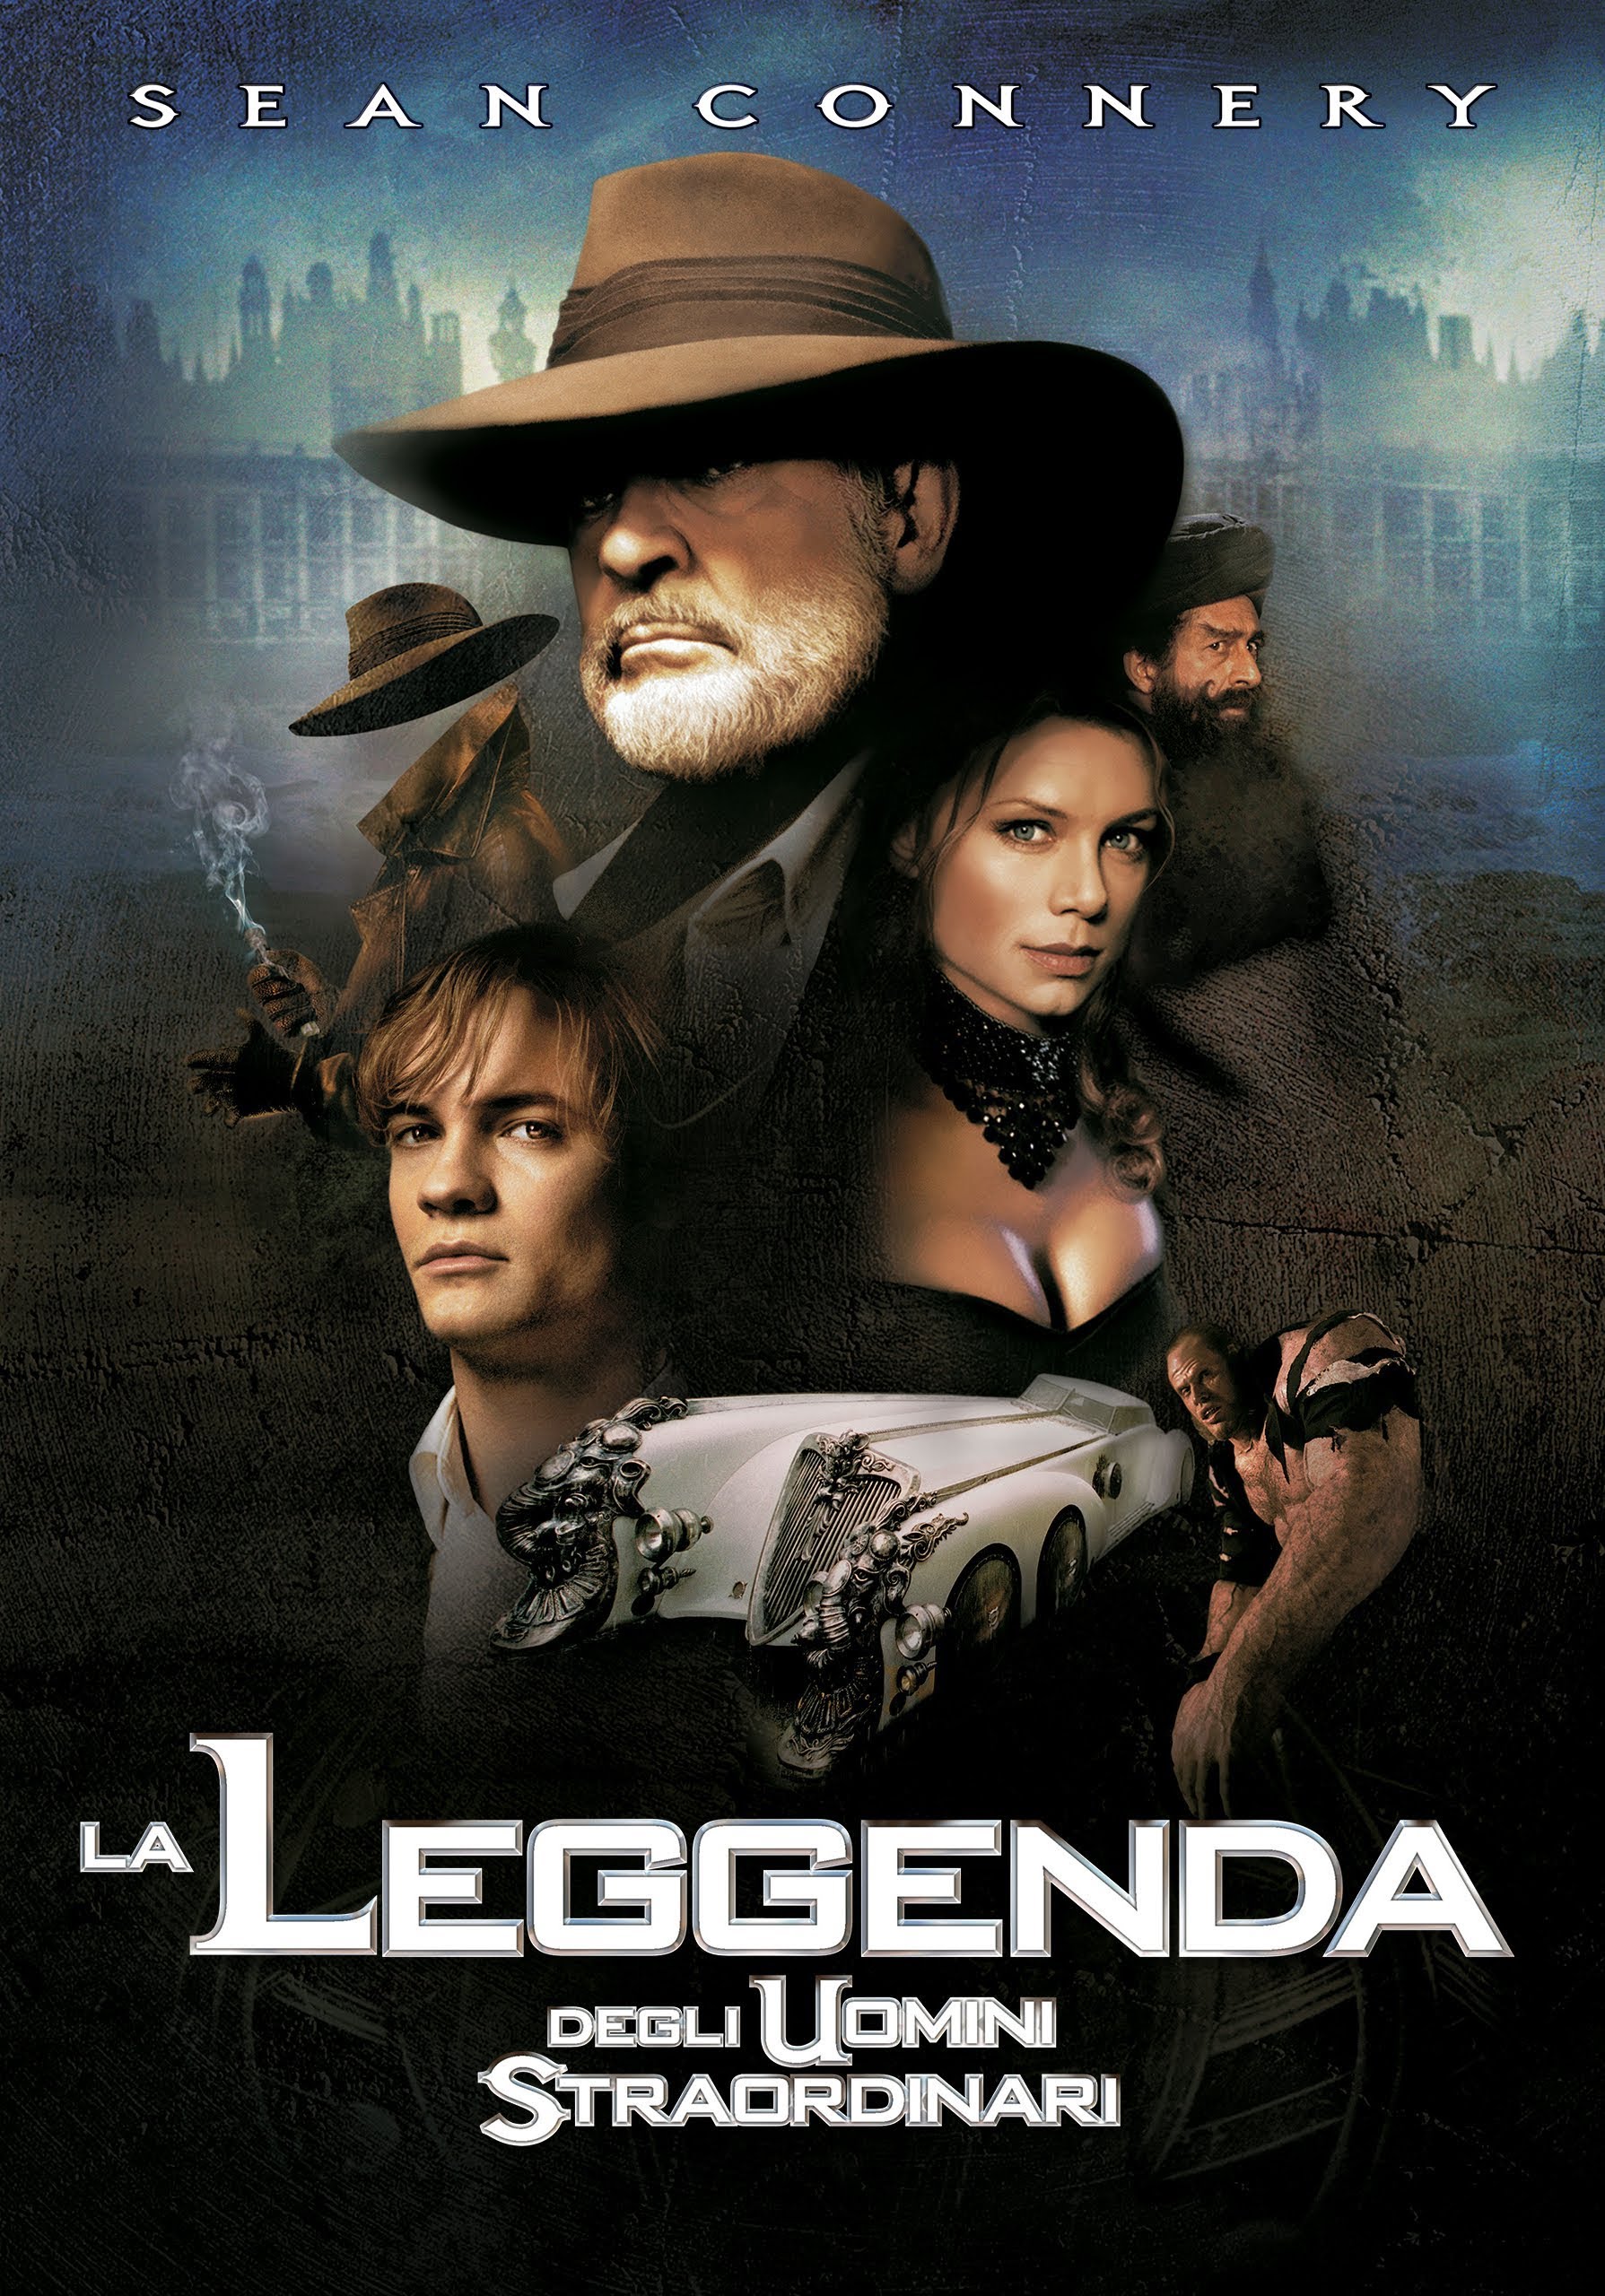 La leggenda degli uomini straordinari [HD] (2003)